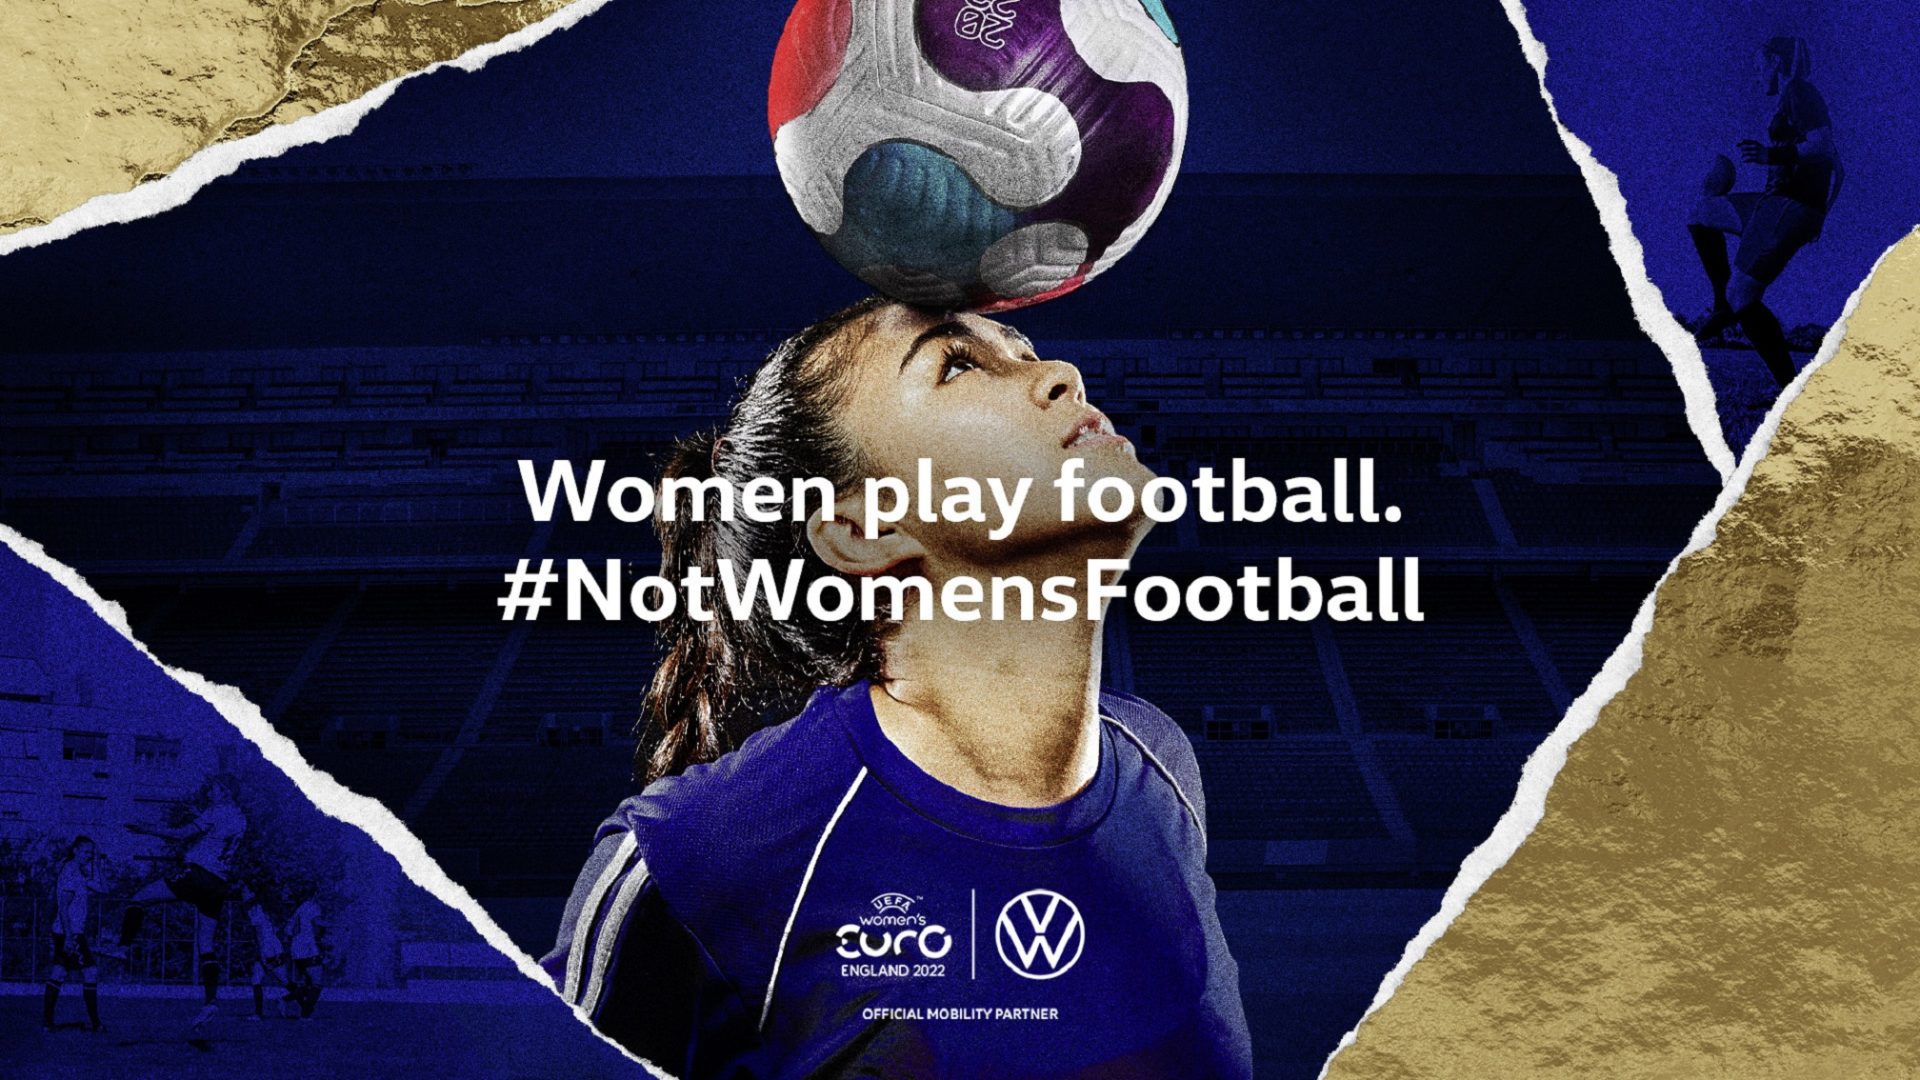 Volkswagen Women play football photo 2 <br>#NotWomensFootball : Volkswagen-Kampagne zur Förderung der Gleichstellung